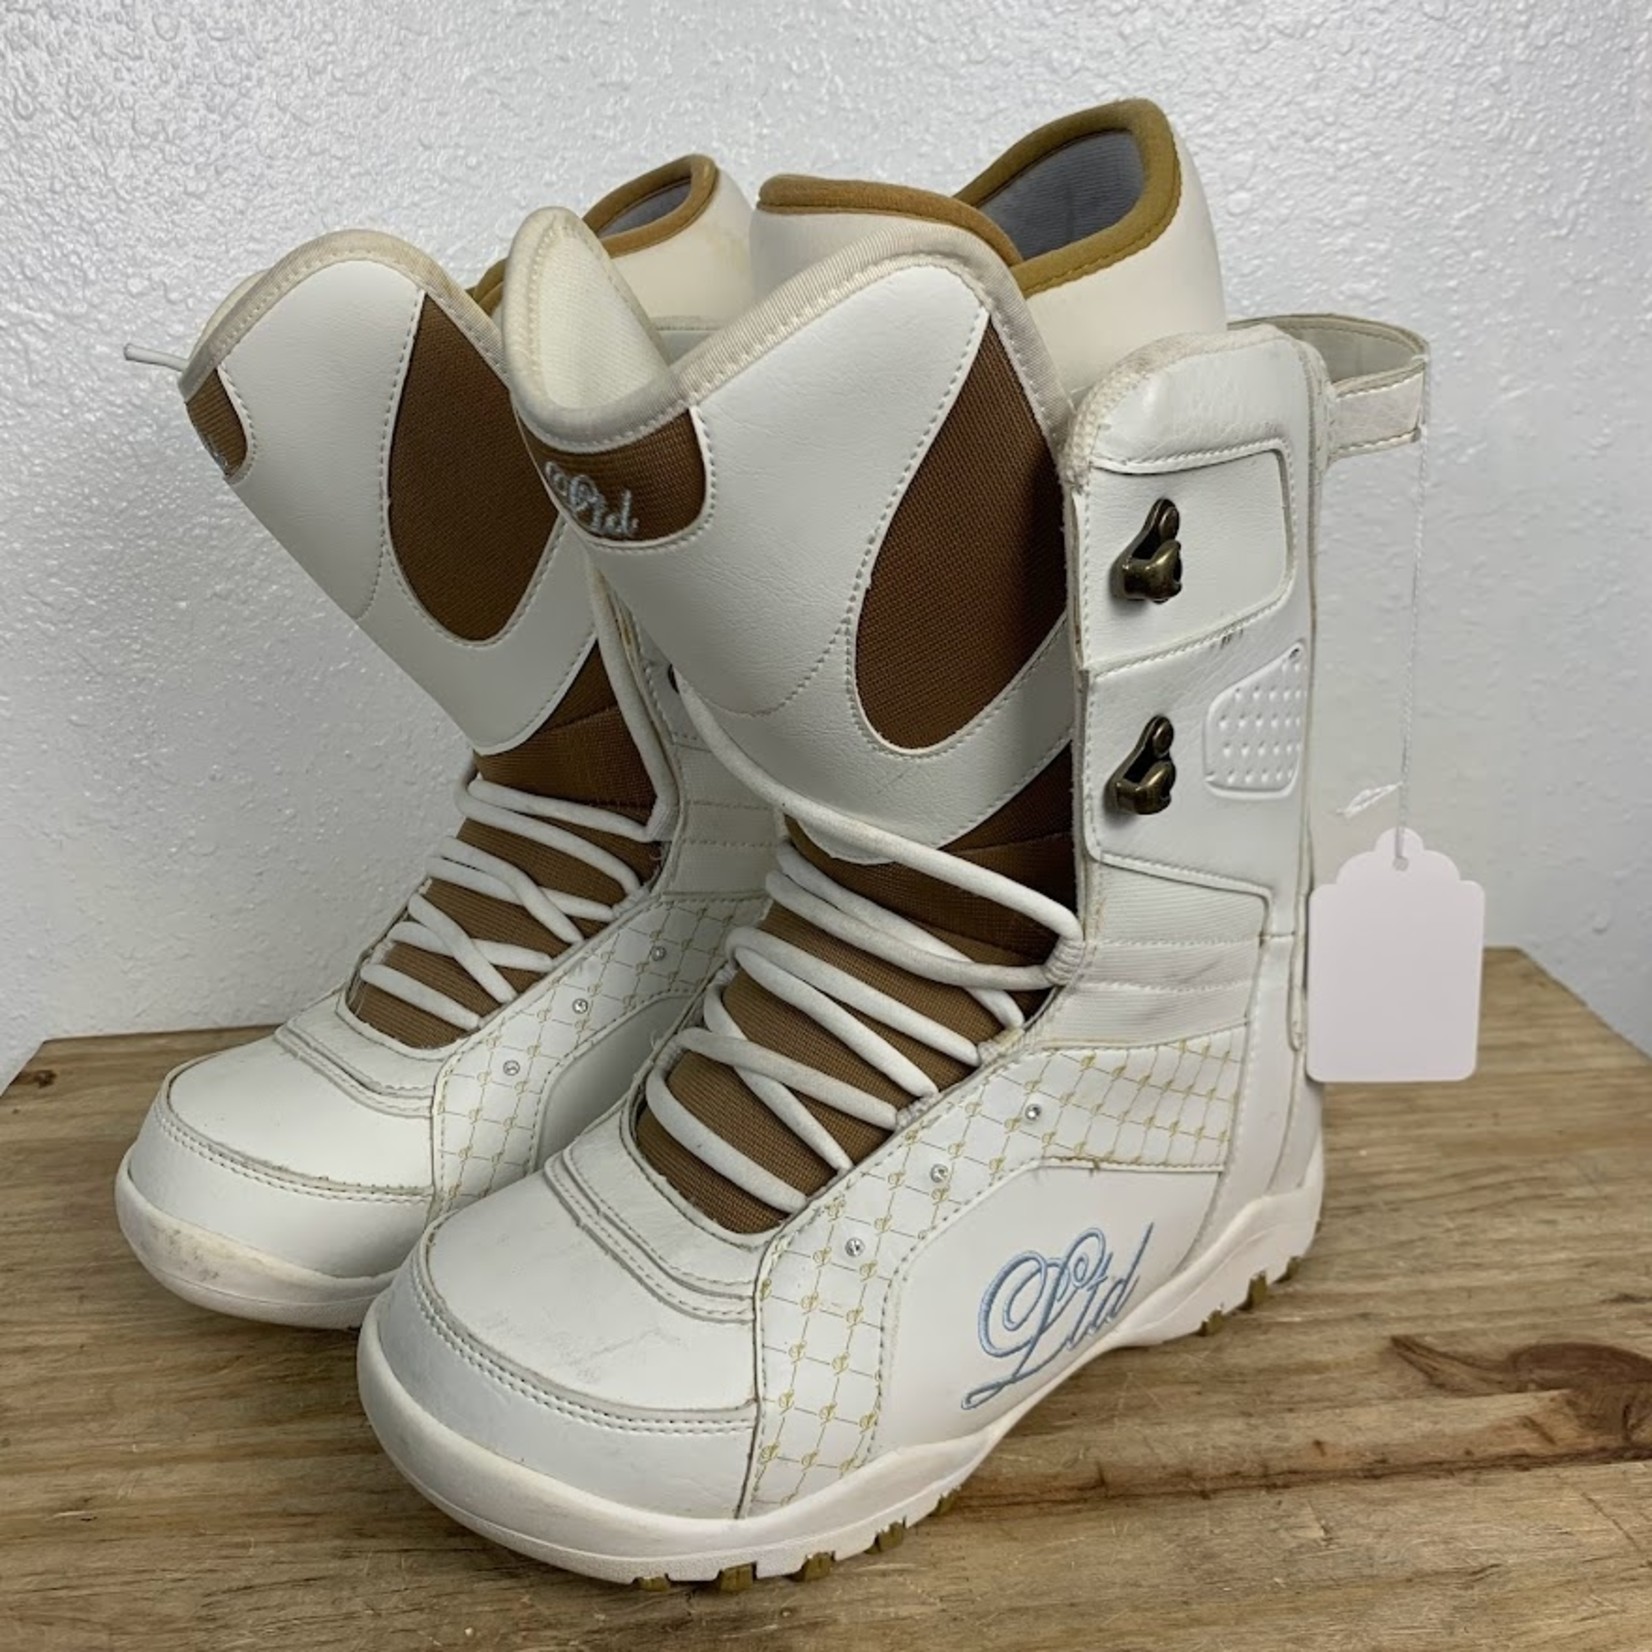 LTD LTD Snowboard Boots, Size 9 WMNS